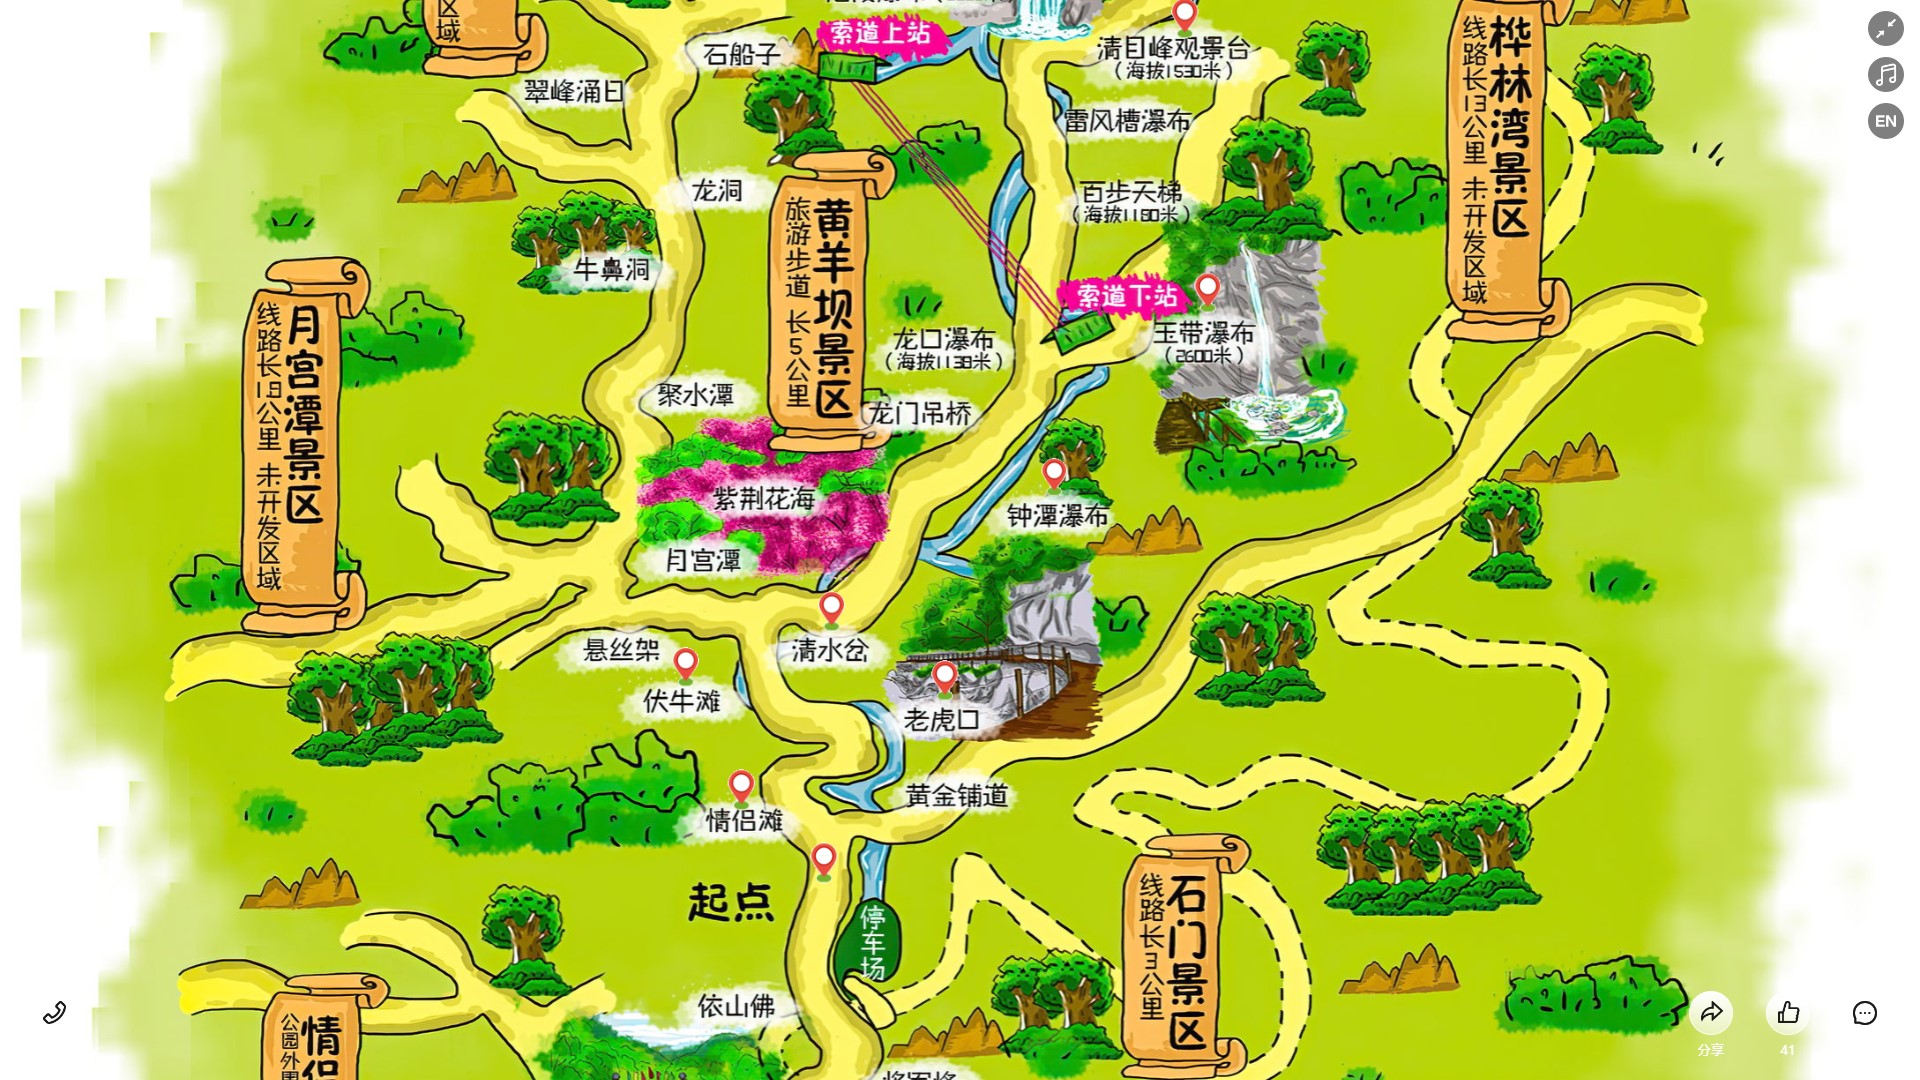 仙游景区导览系统